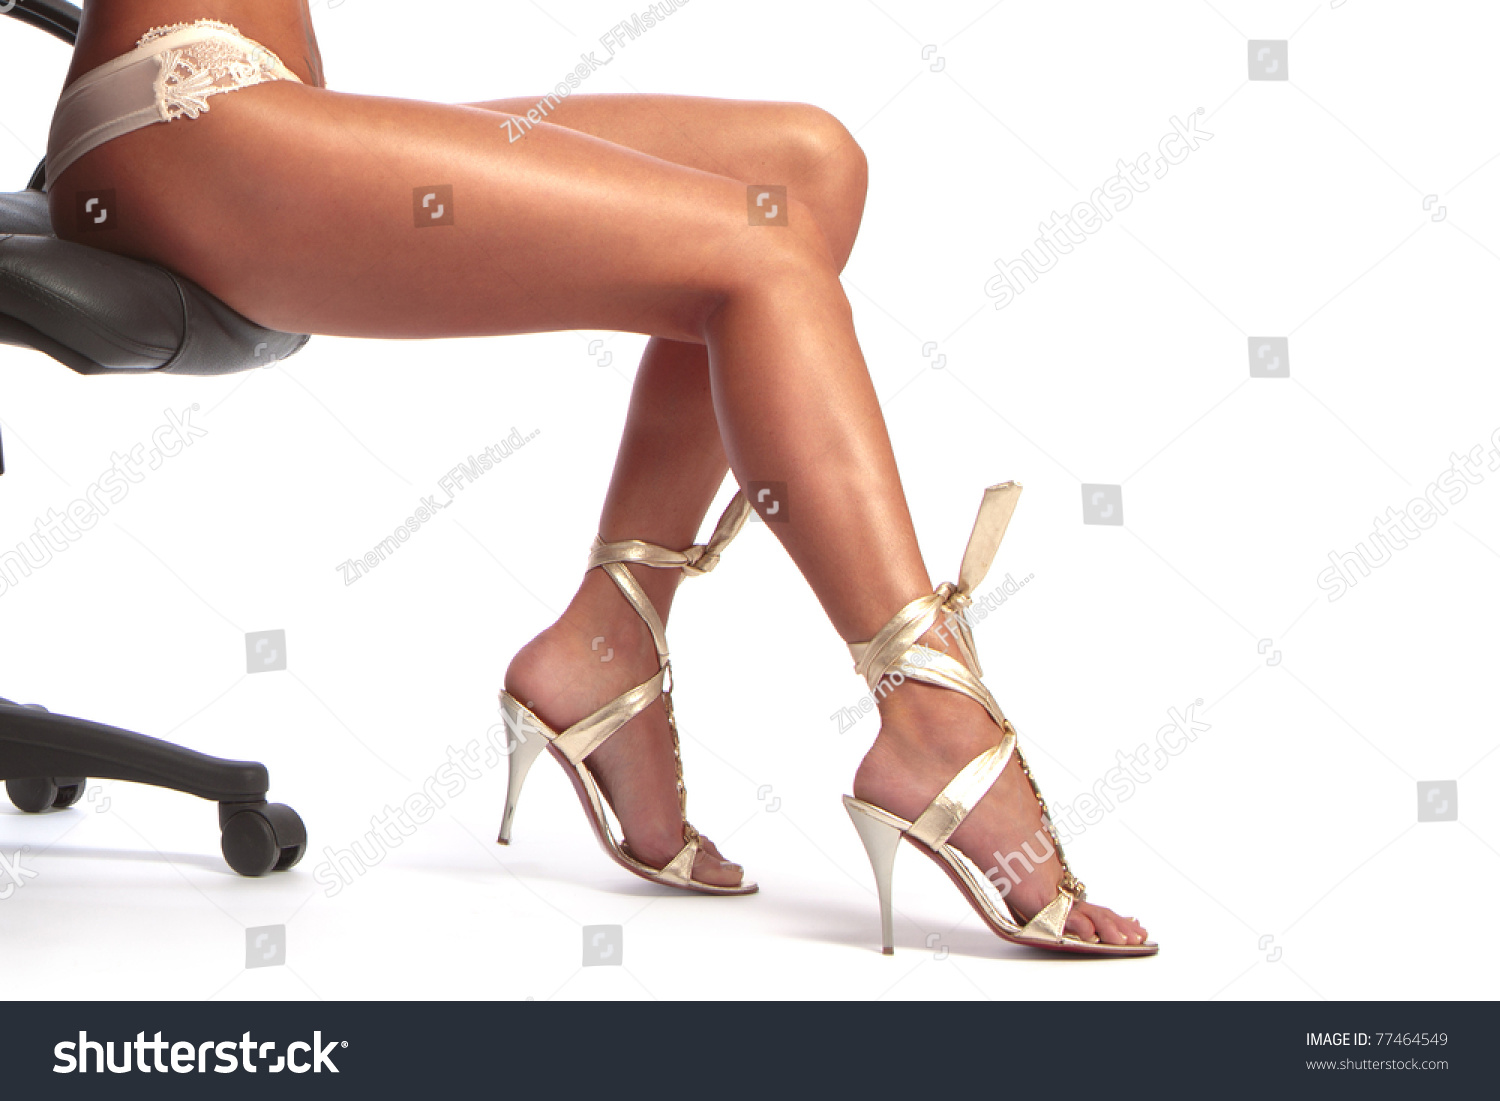 Sexy feet girl